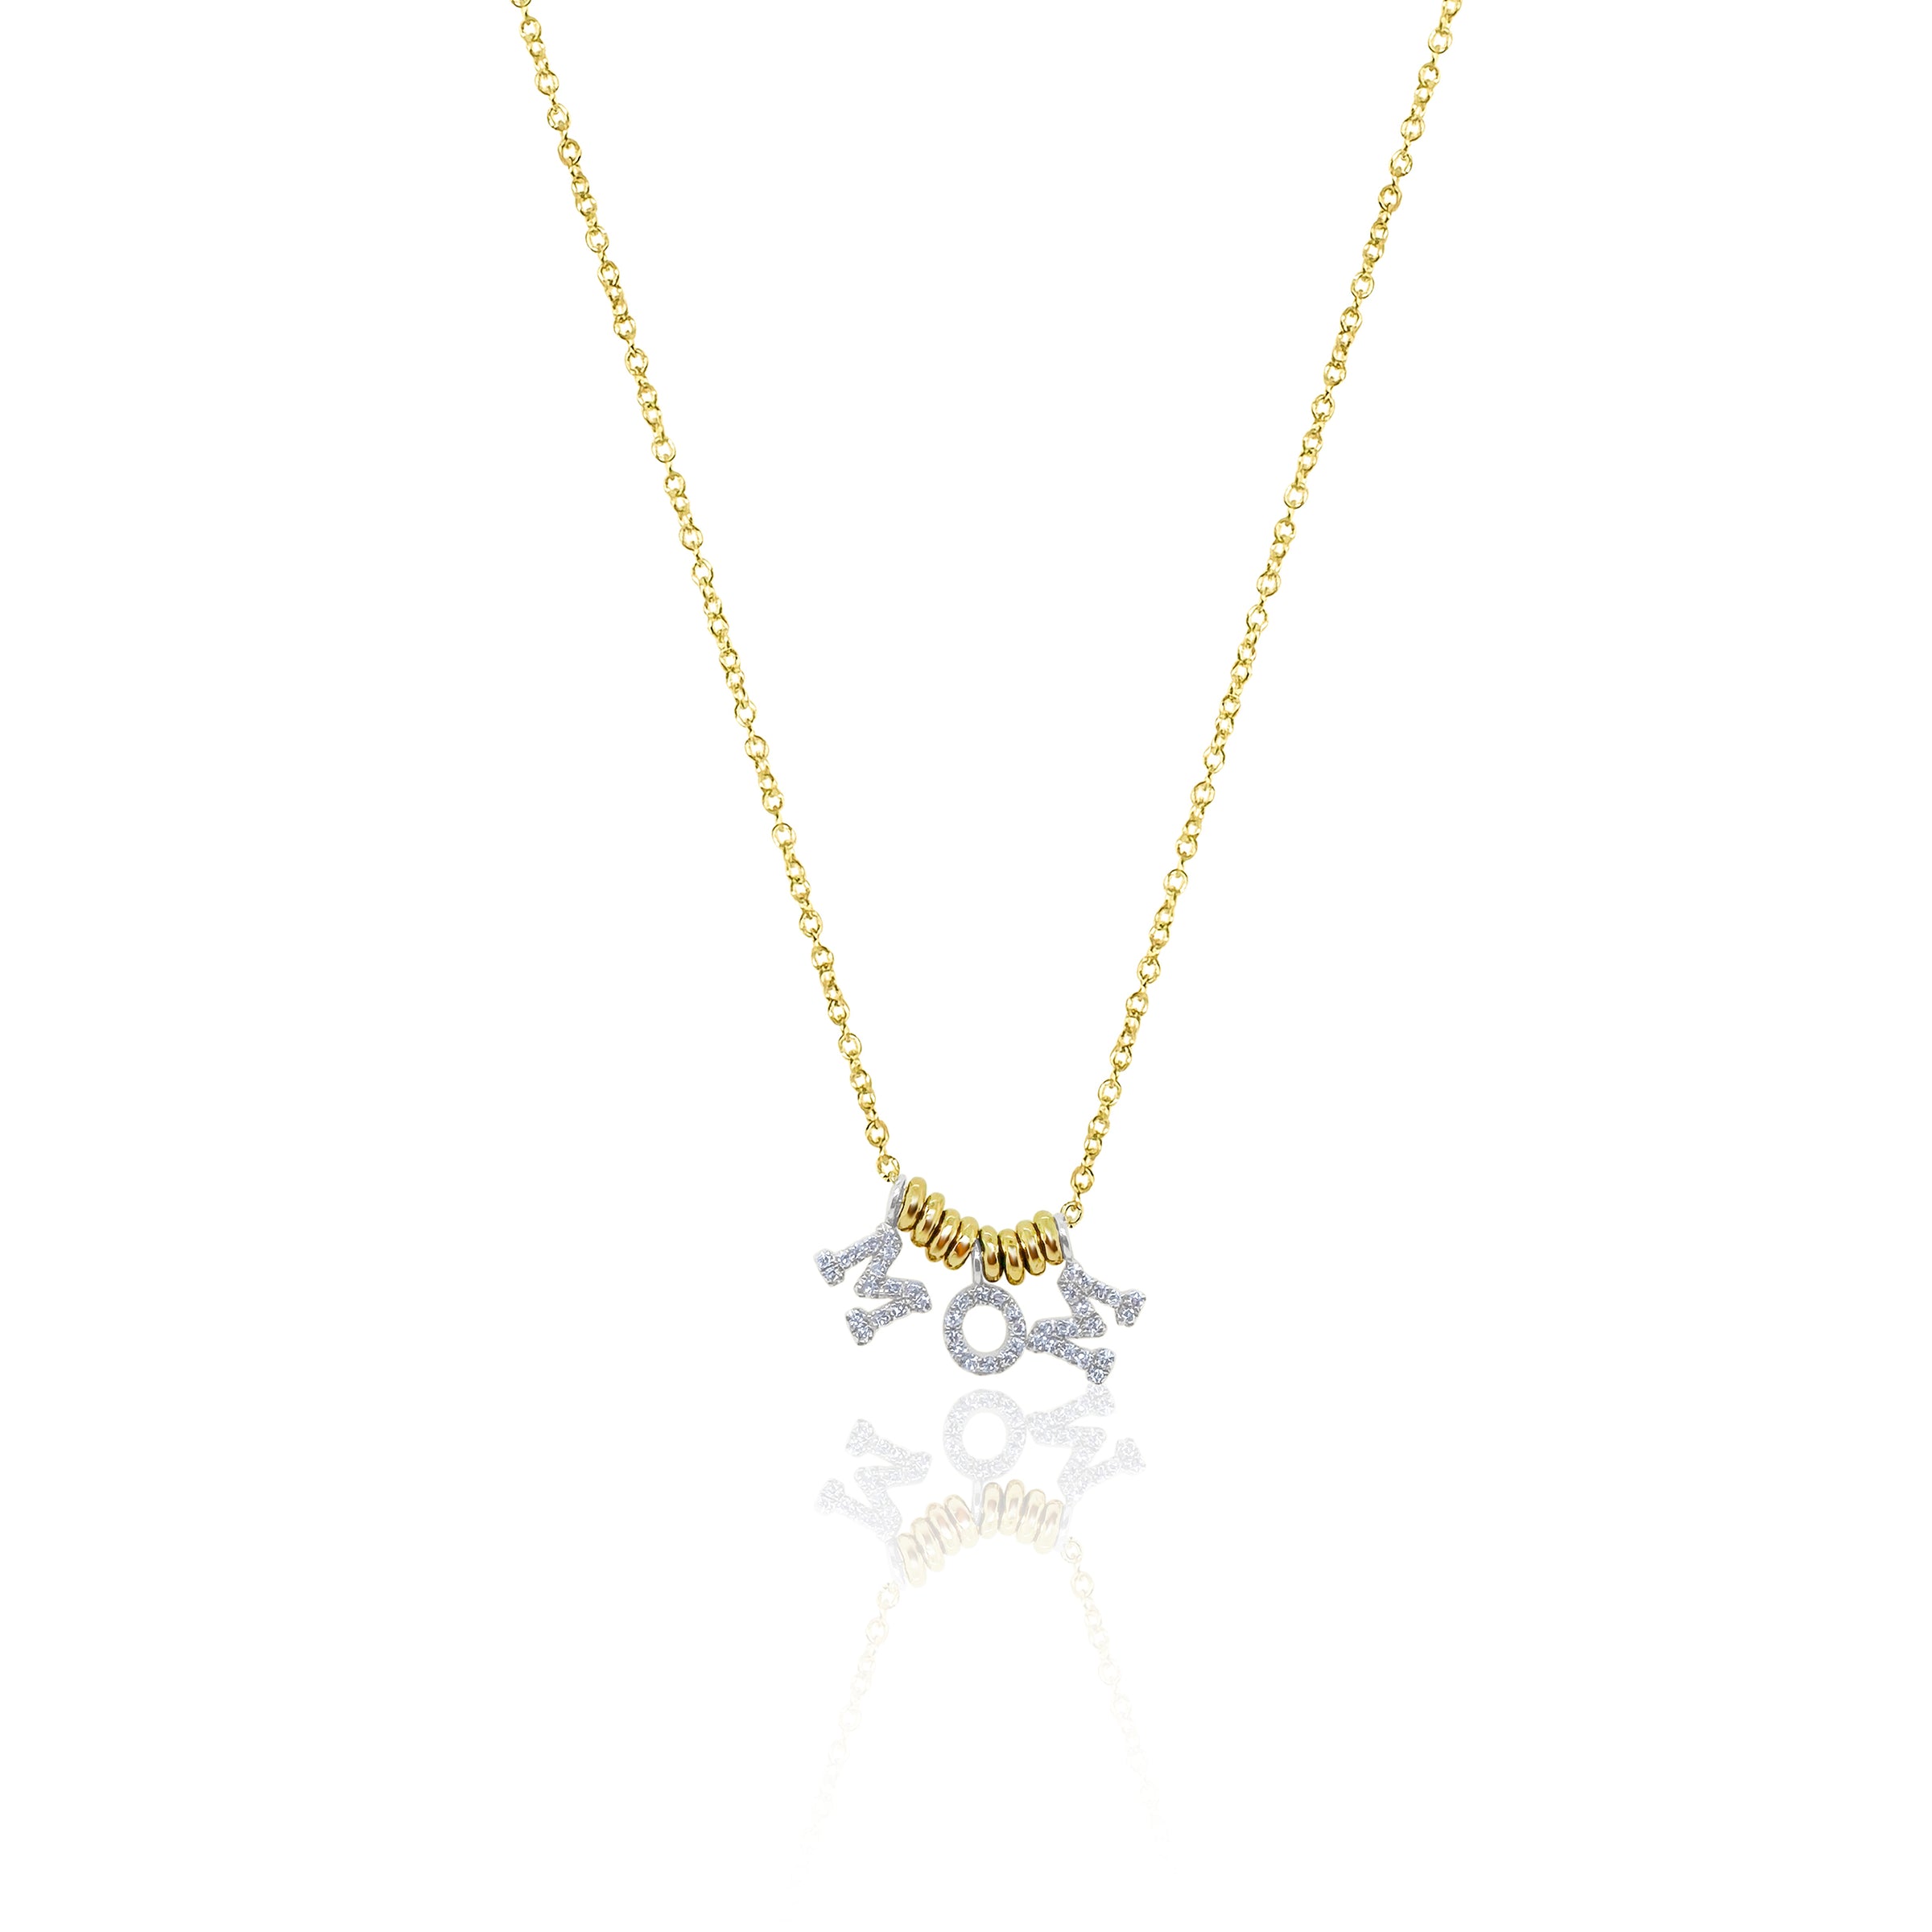 JeenMata MOM Diamond Pendant Necklace in 18K White Gold over Silver -  Walmart.com